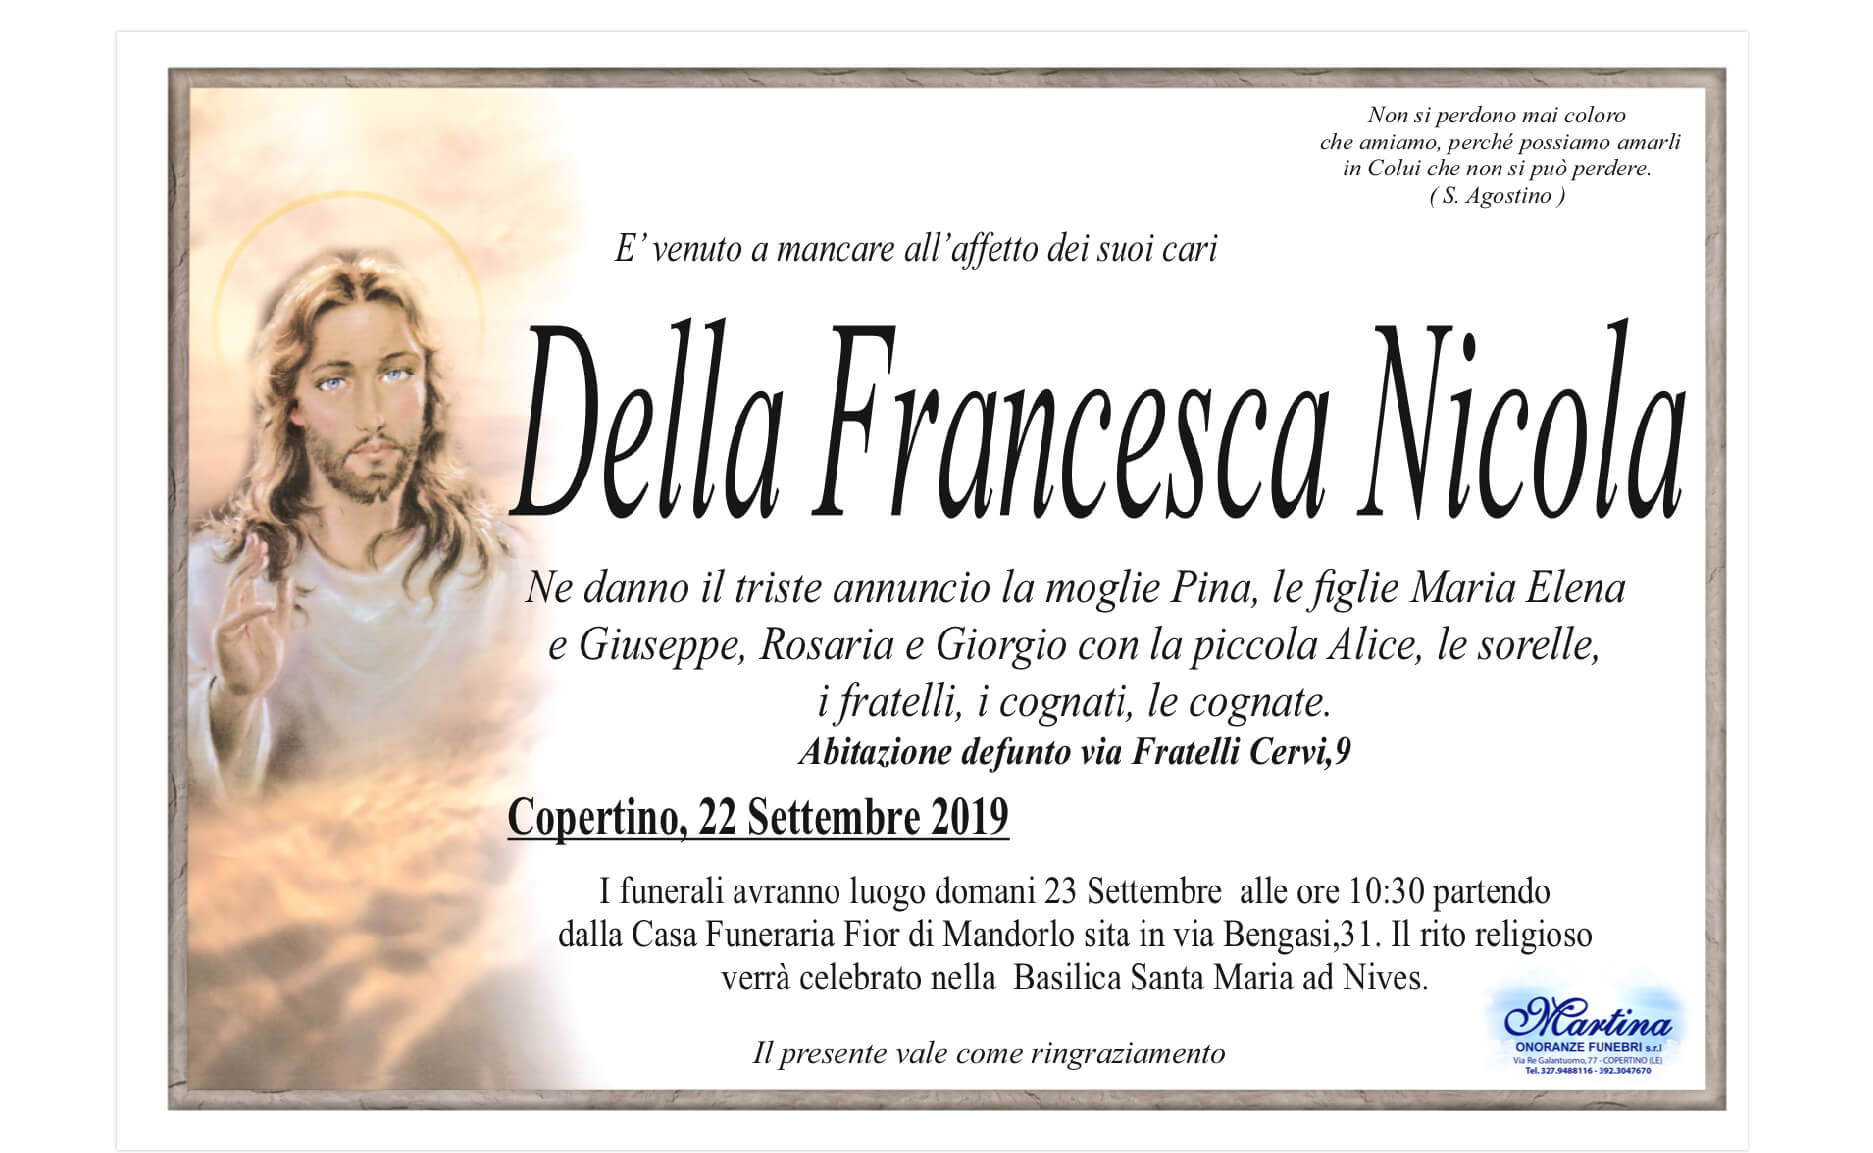 Nicola Della Francesca